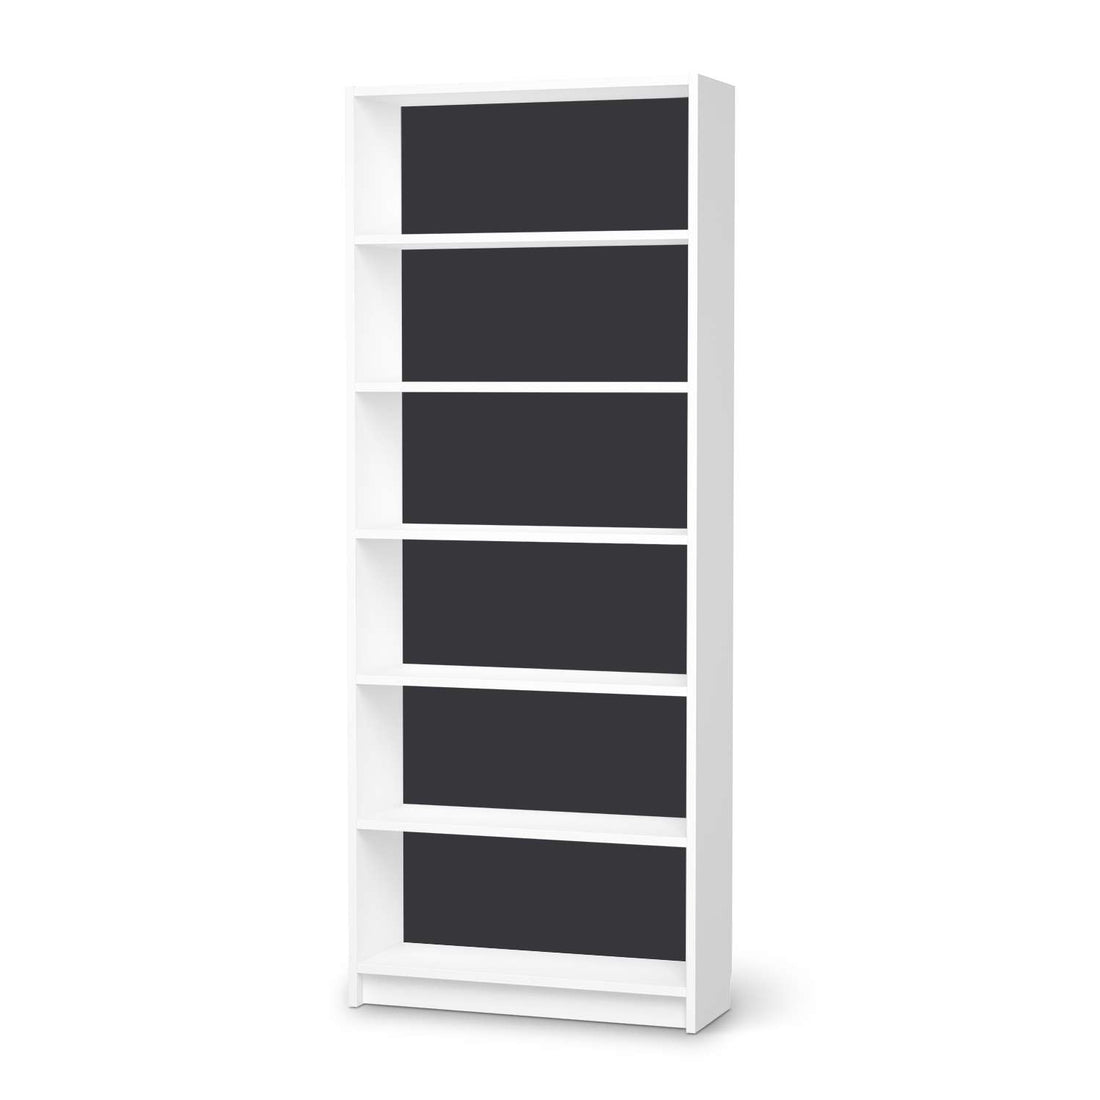 Klebefolie Grau Dark - IKEA Billy Regal 6 Fächer - weiss